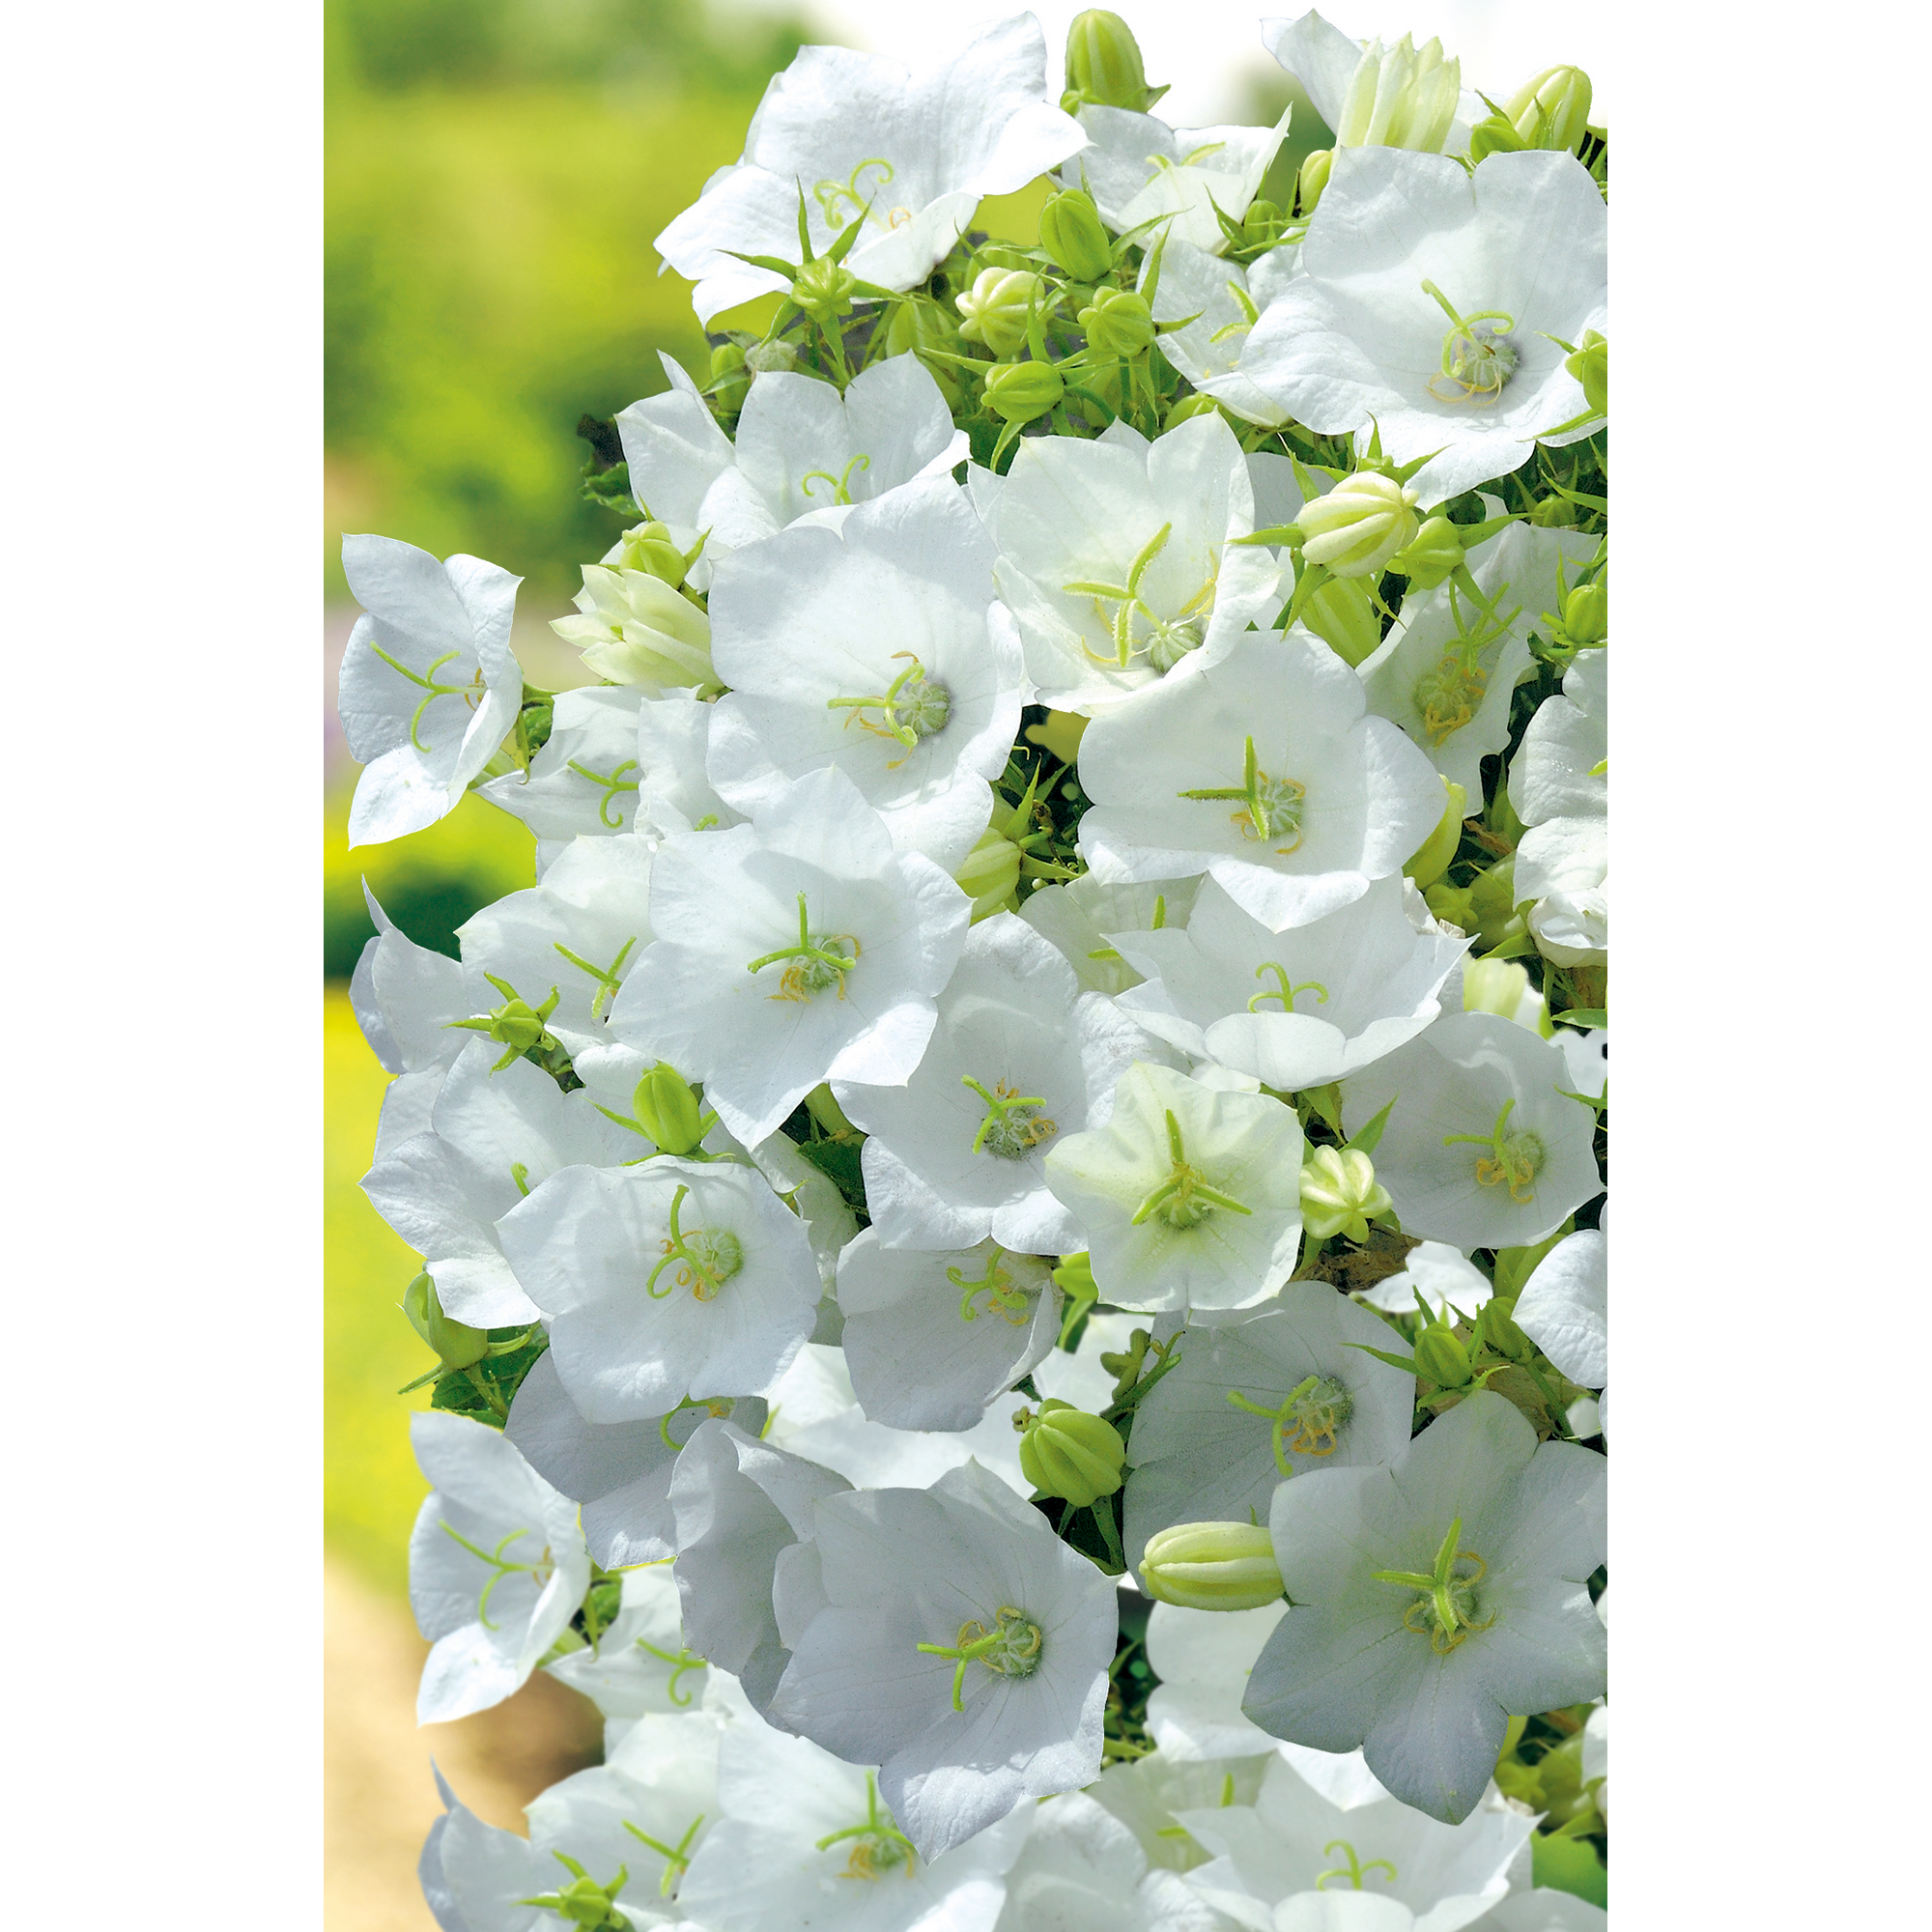 Karpatenglockenblume 'Pearl White', 9 cm Topf, 3er-Set + product picture